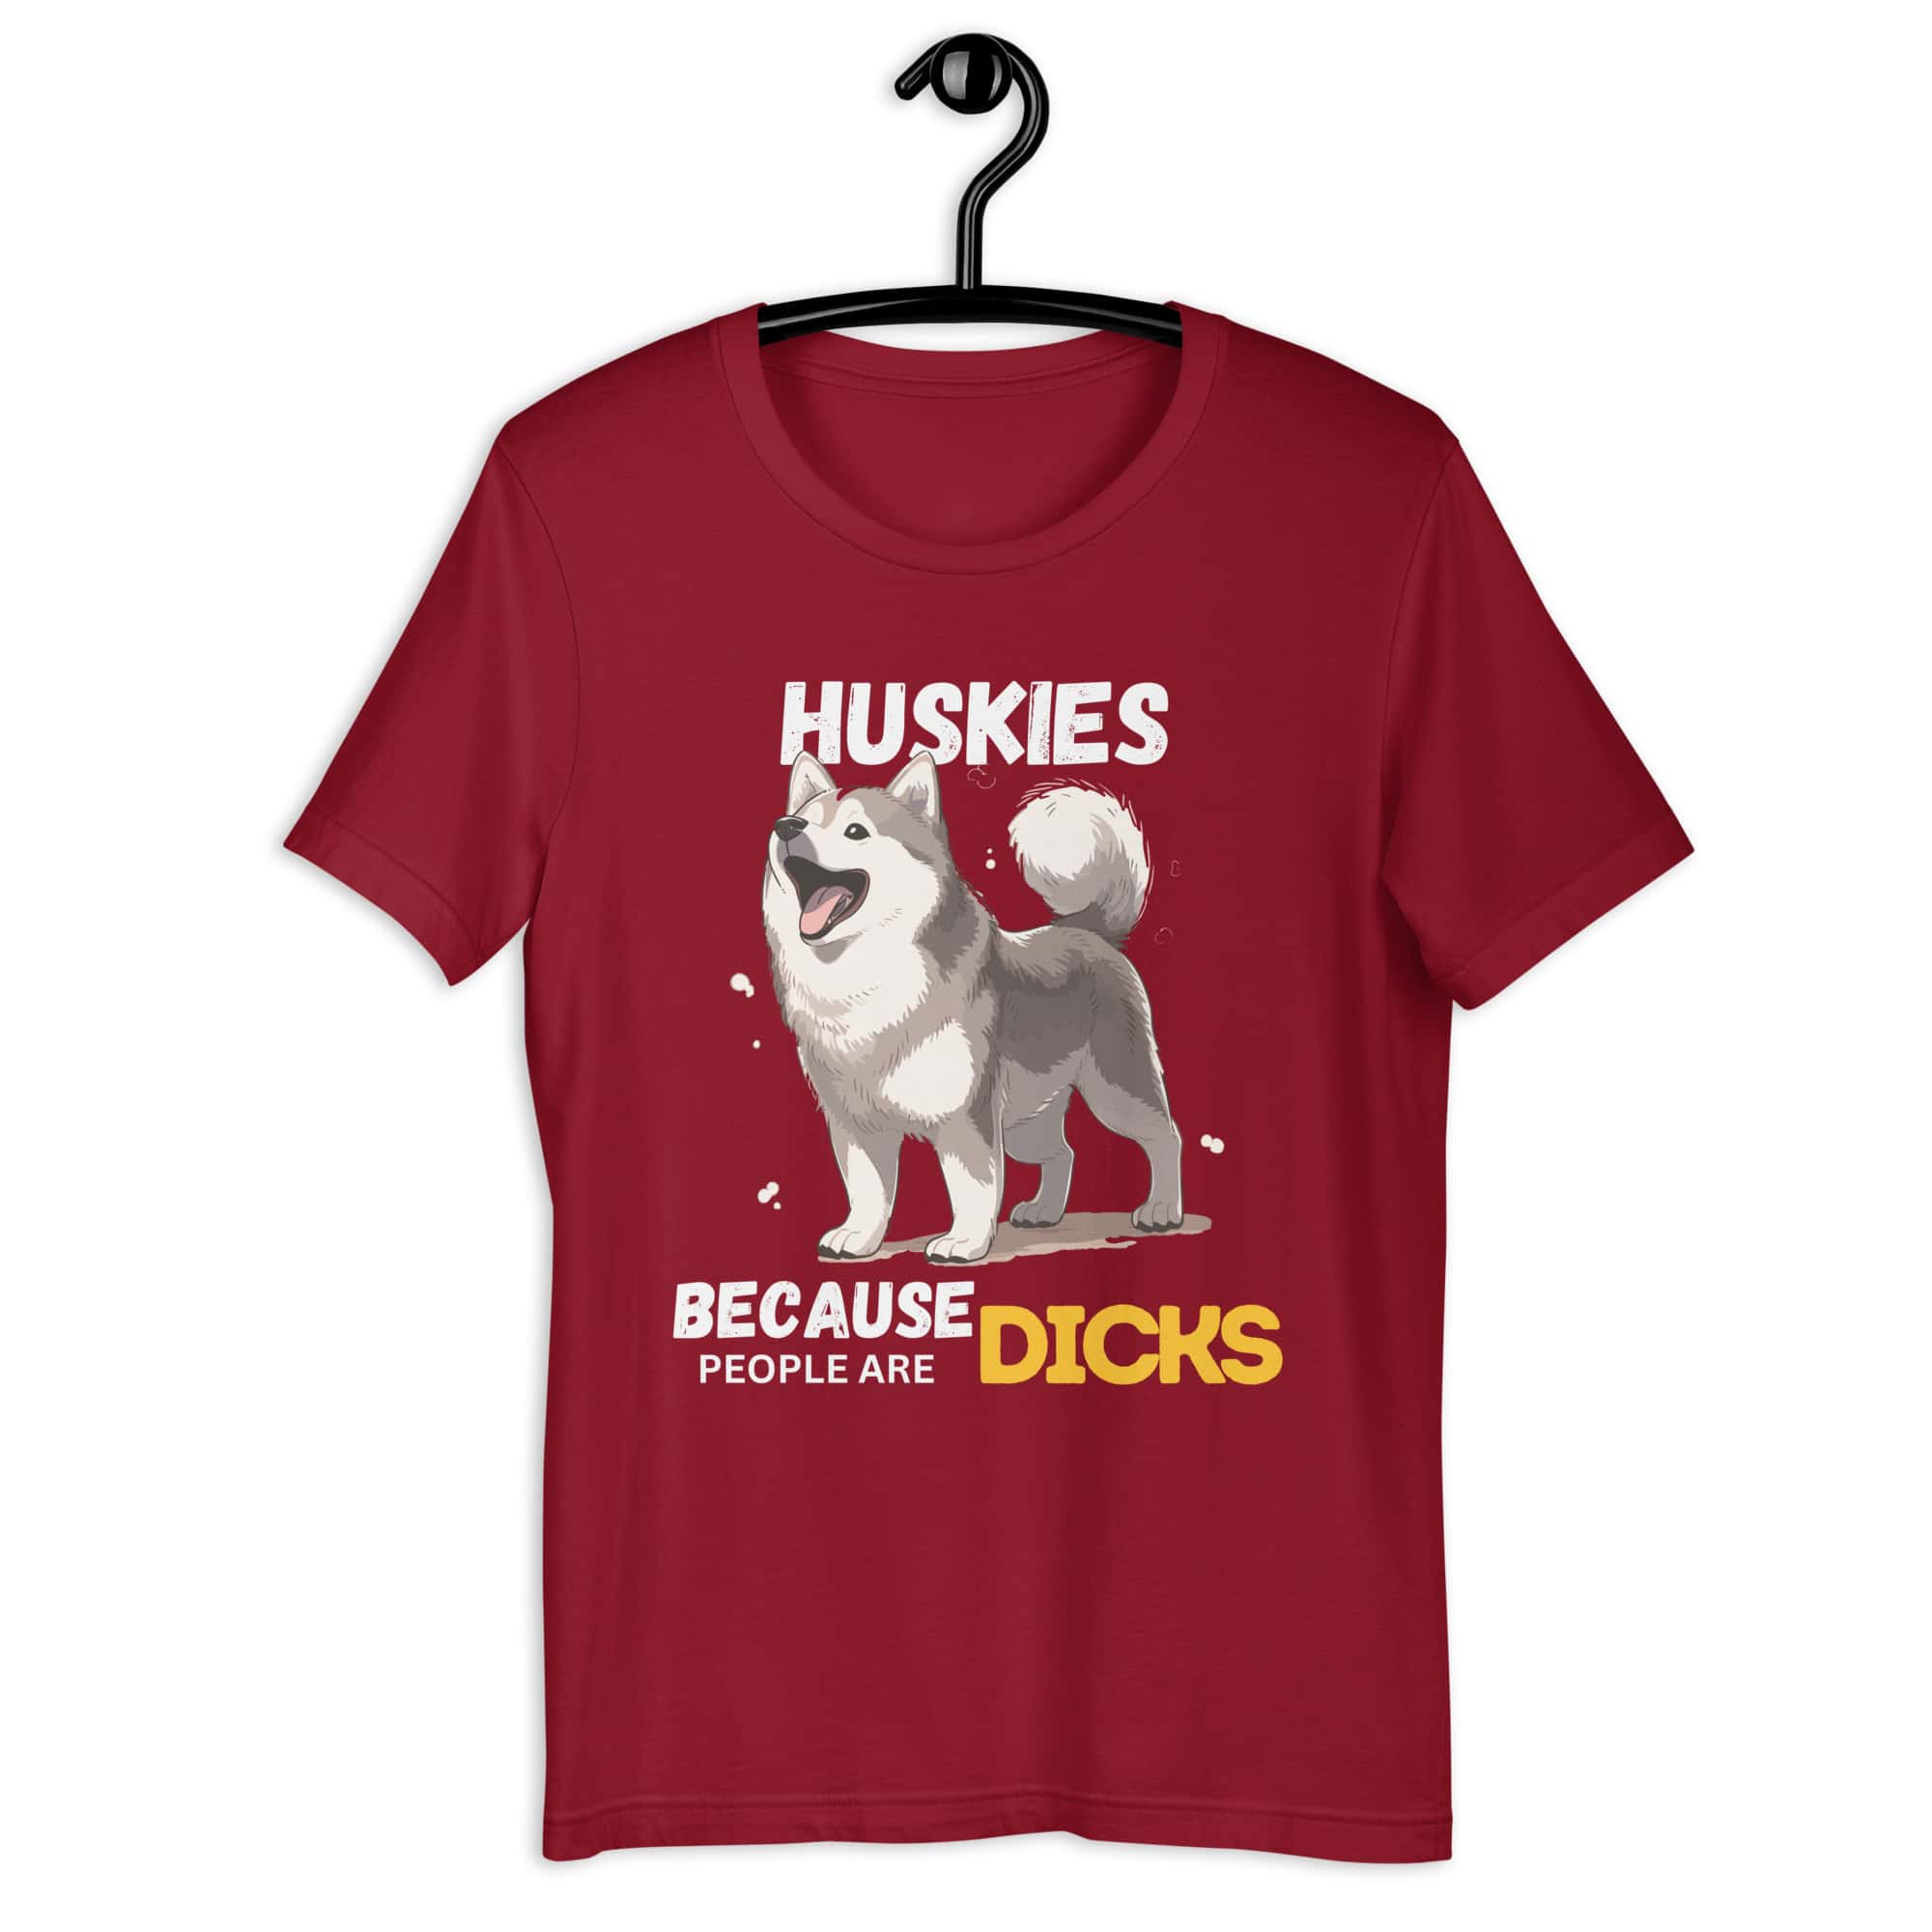 Huskies Because People Are Dicks Unisex T-Shirt maroon